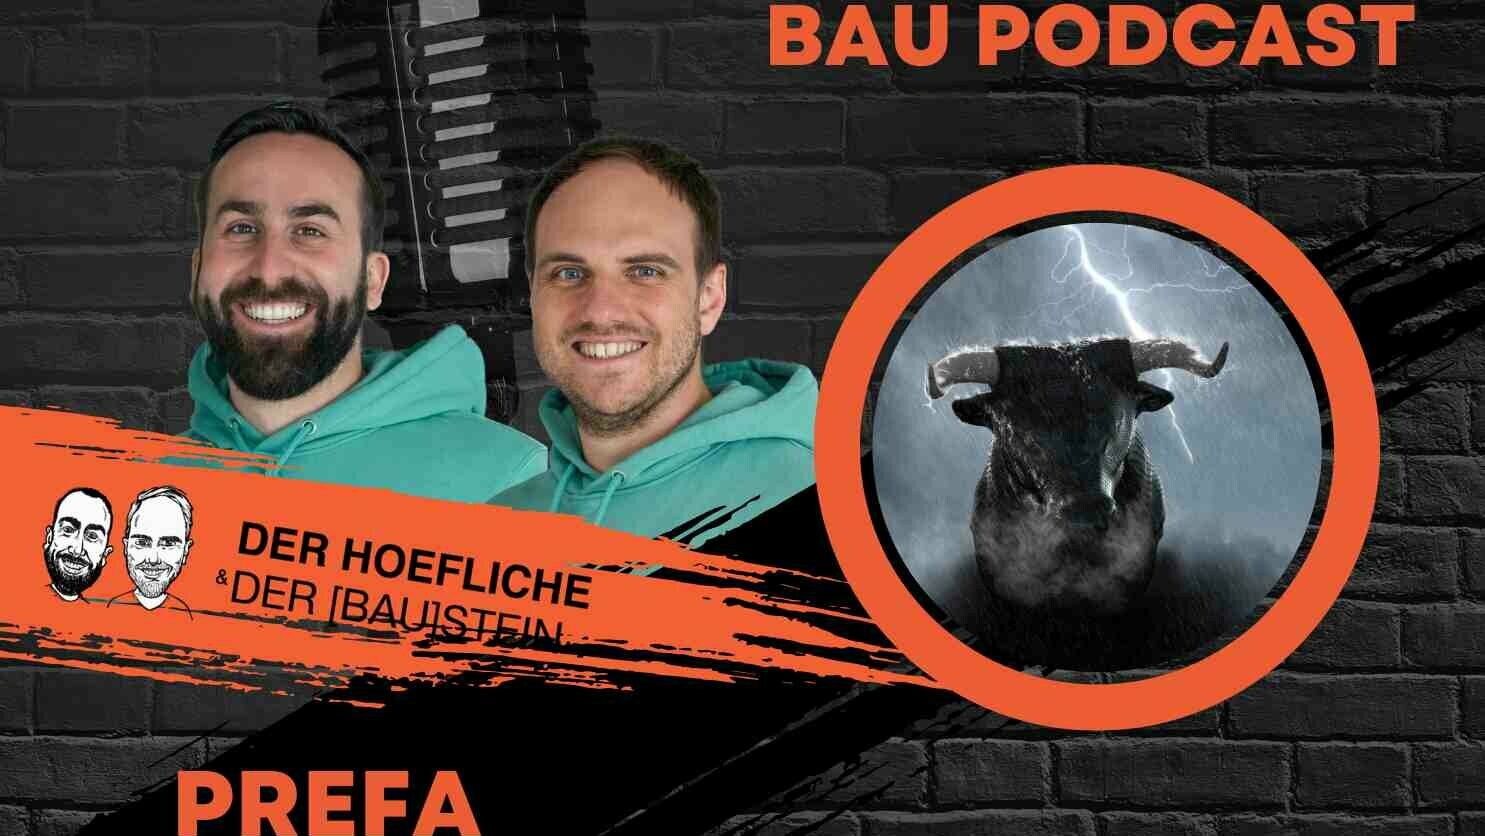 Thumbnail von der Höfliche und der BAUstein für die Podcastfolge mit PREFA 